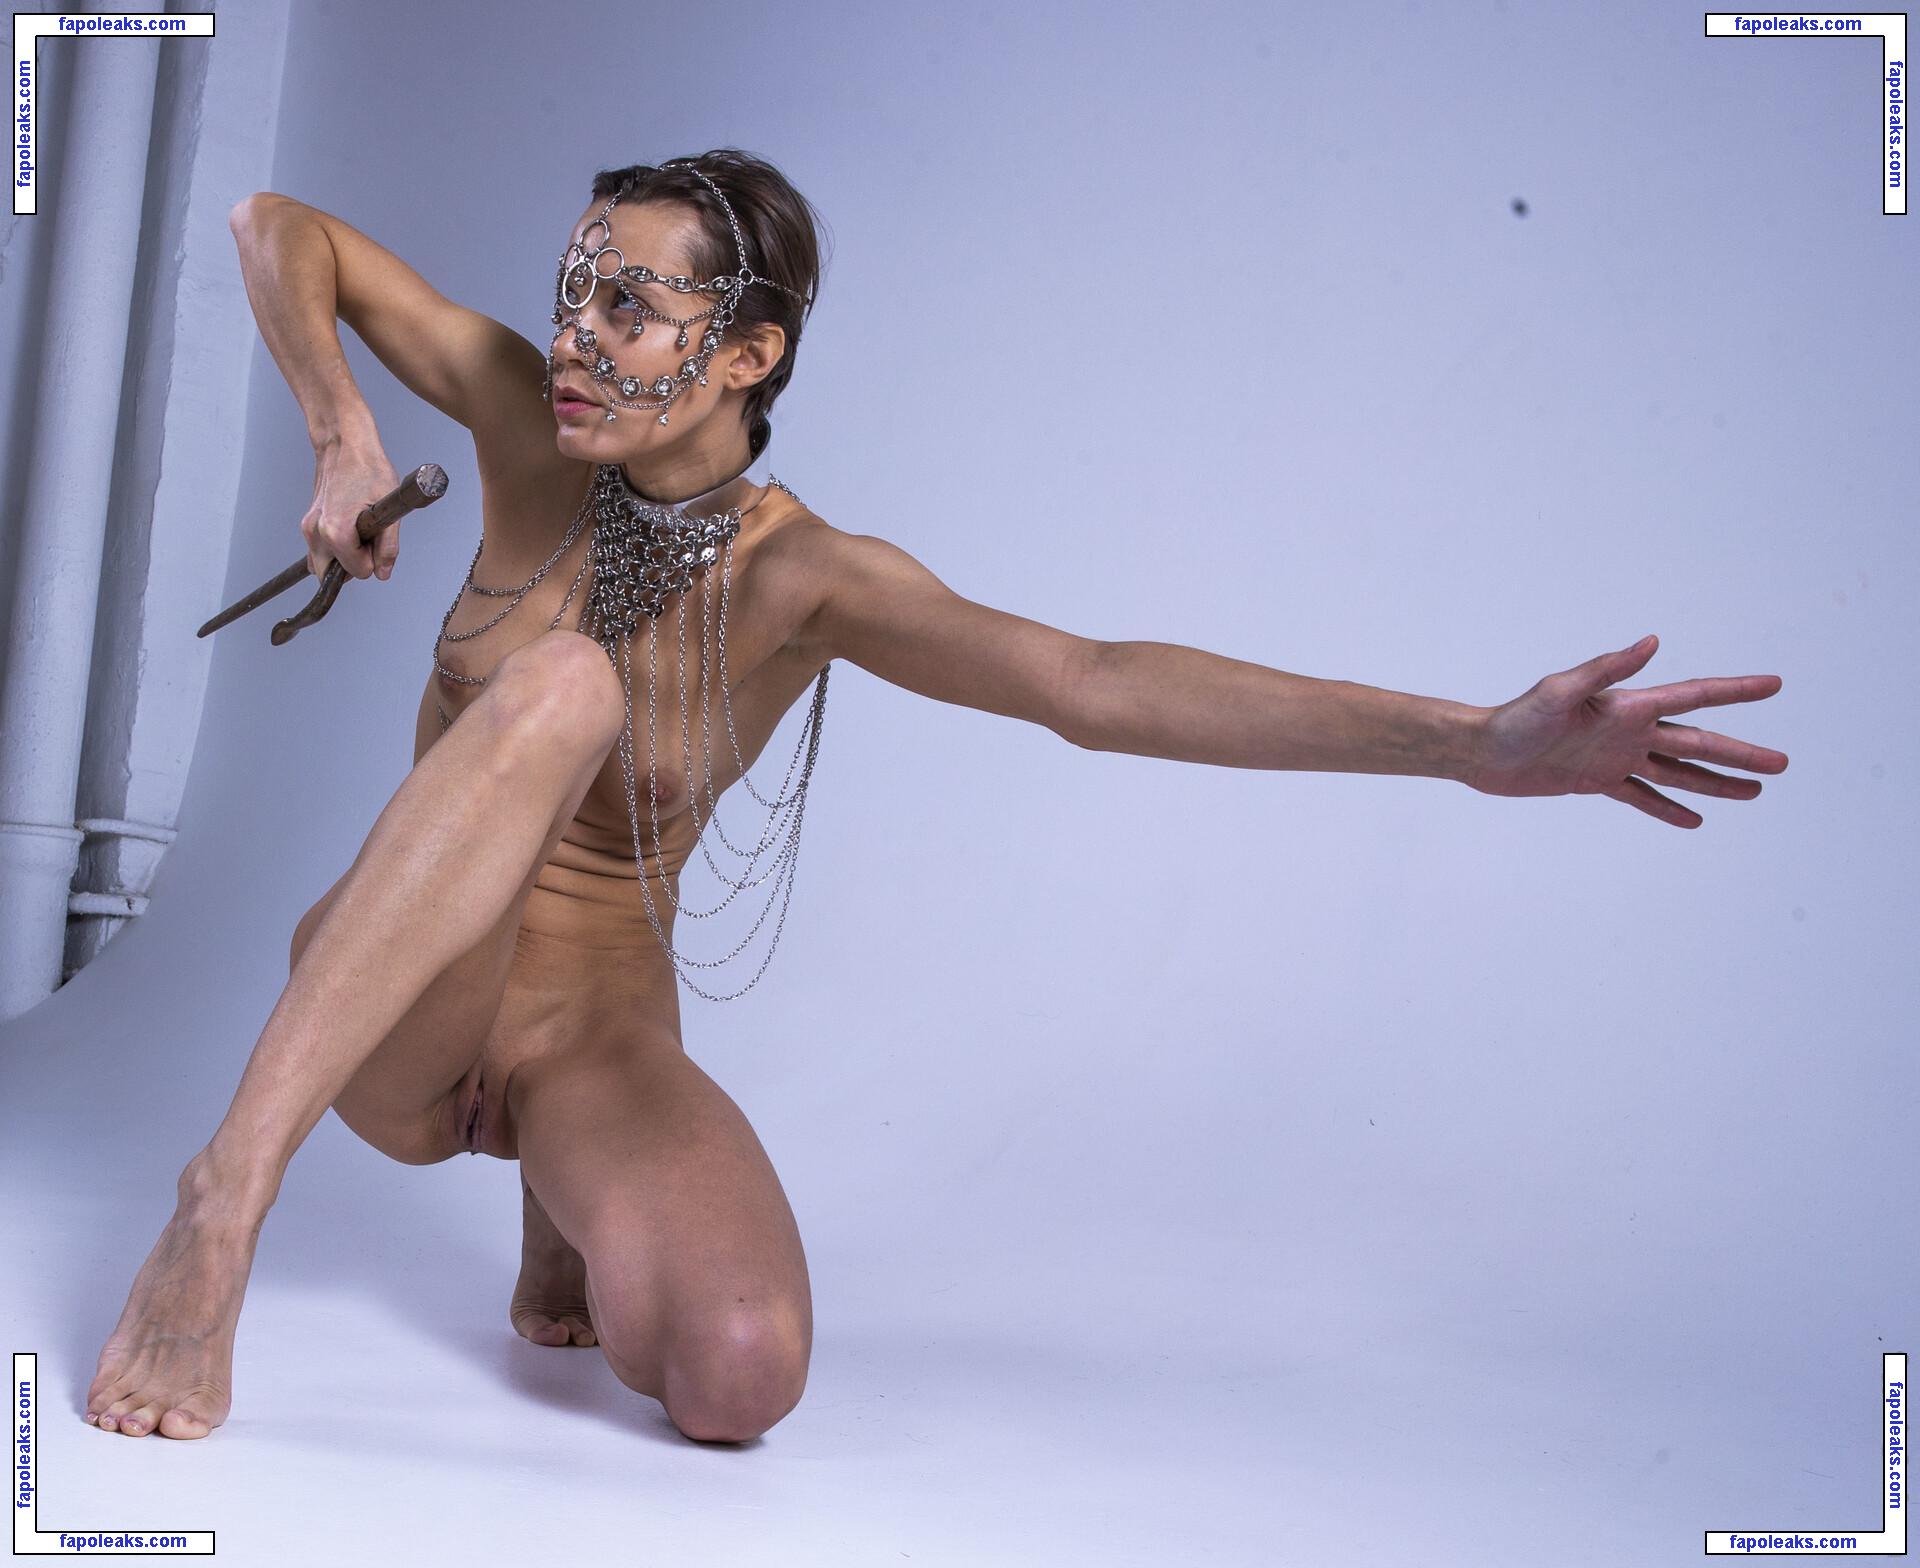 Oksana Chucha / chucha_babuchina nude photo #0153 from OnlyFans